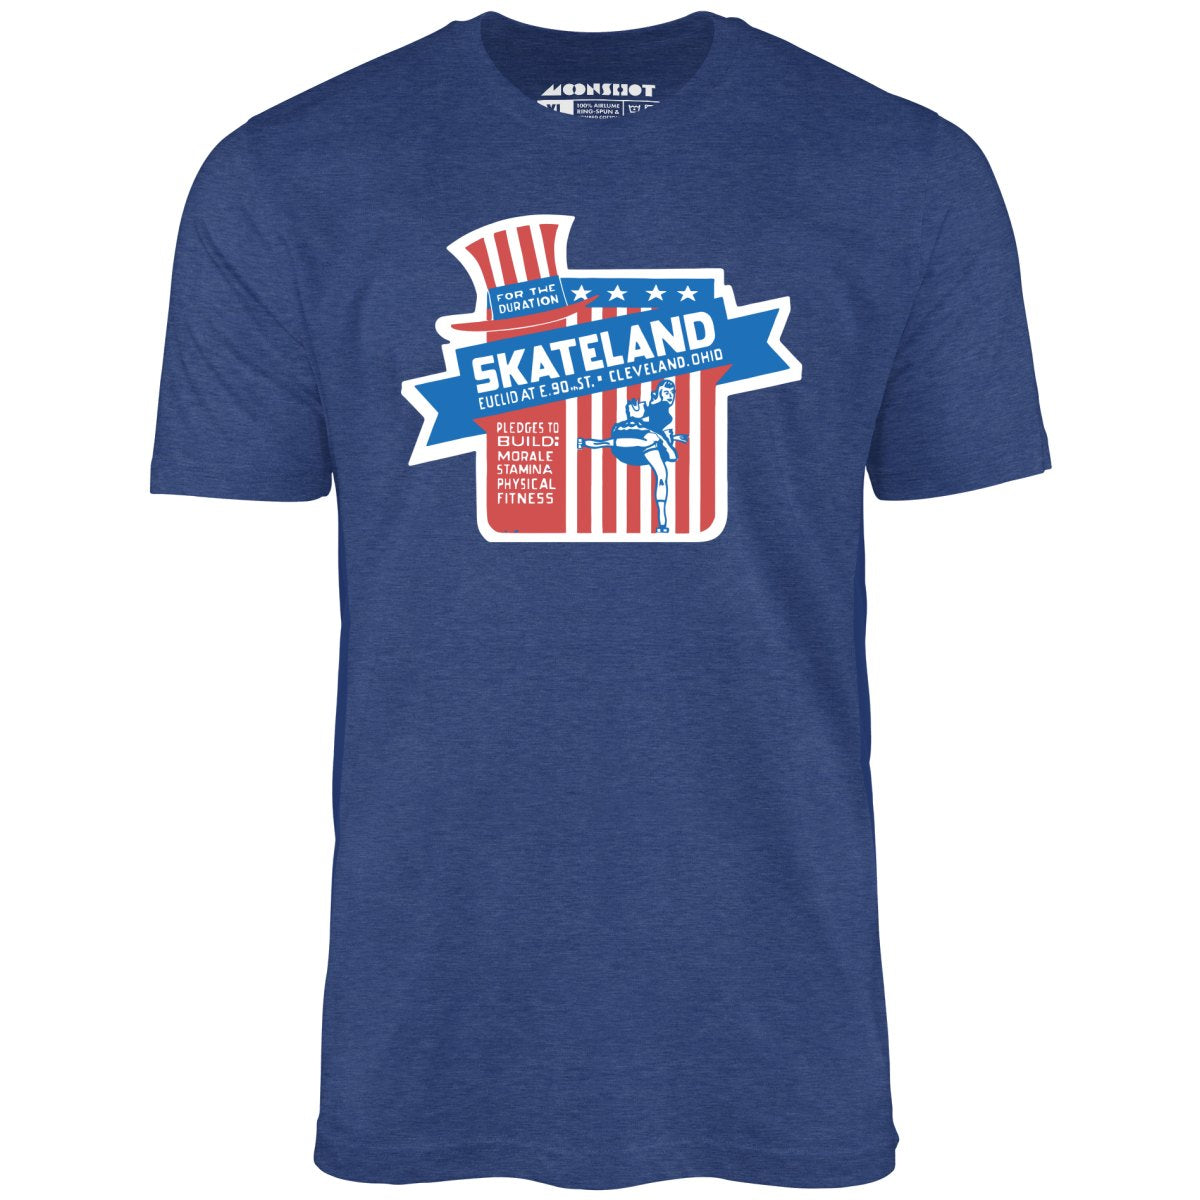 Skateland - Cleveland, OH - Vintage Roller Rink - Unisex T-Shirt